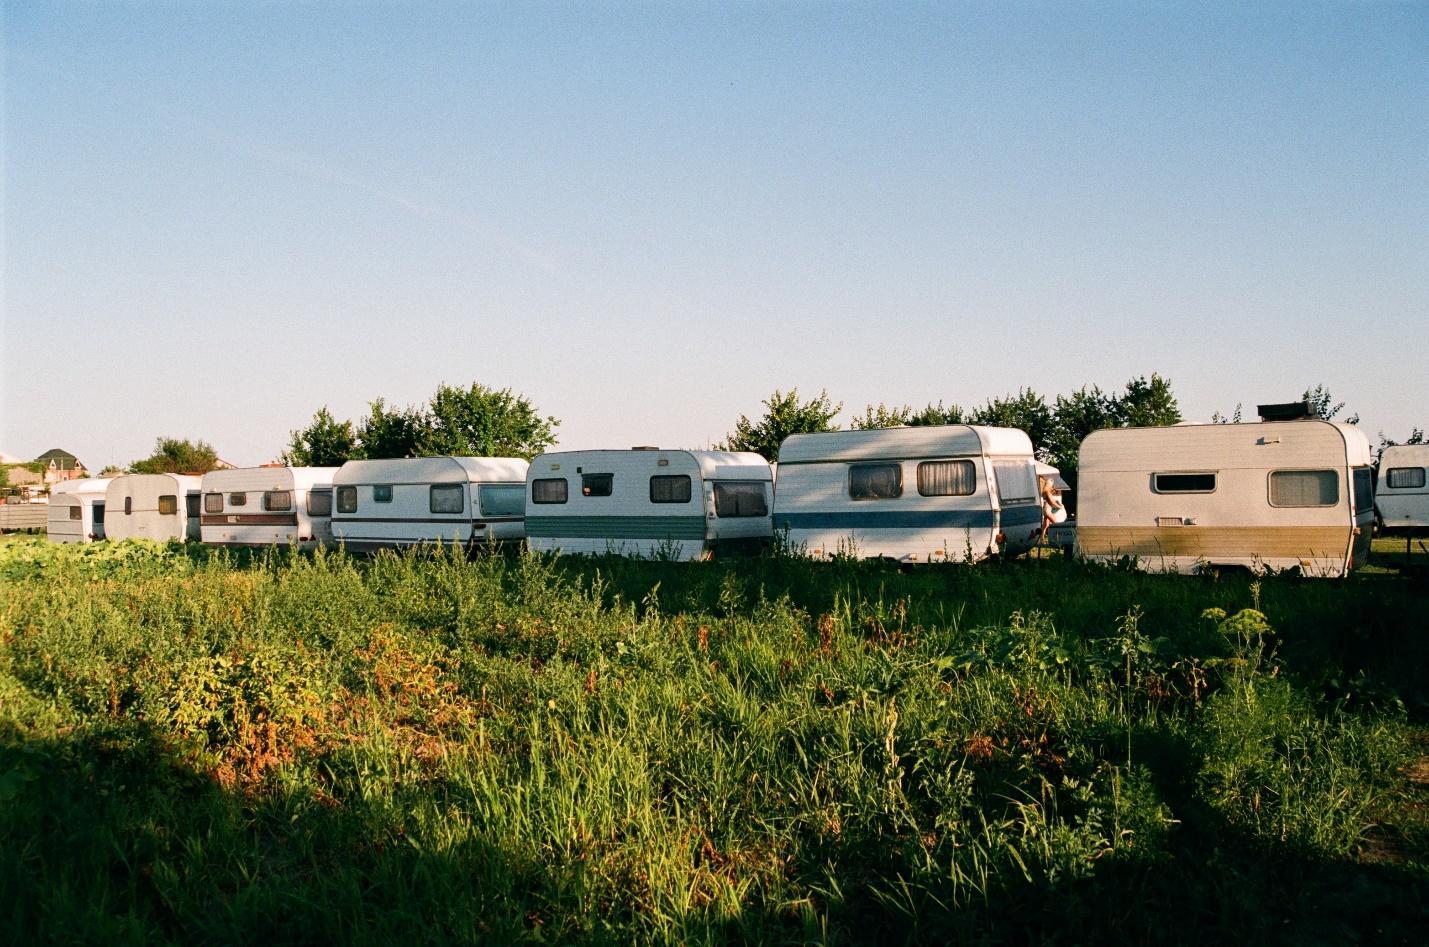 caravans parked in line